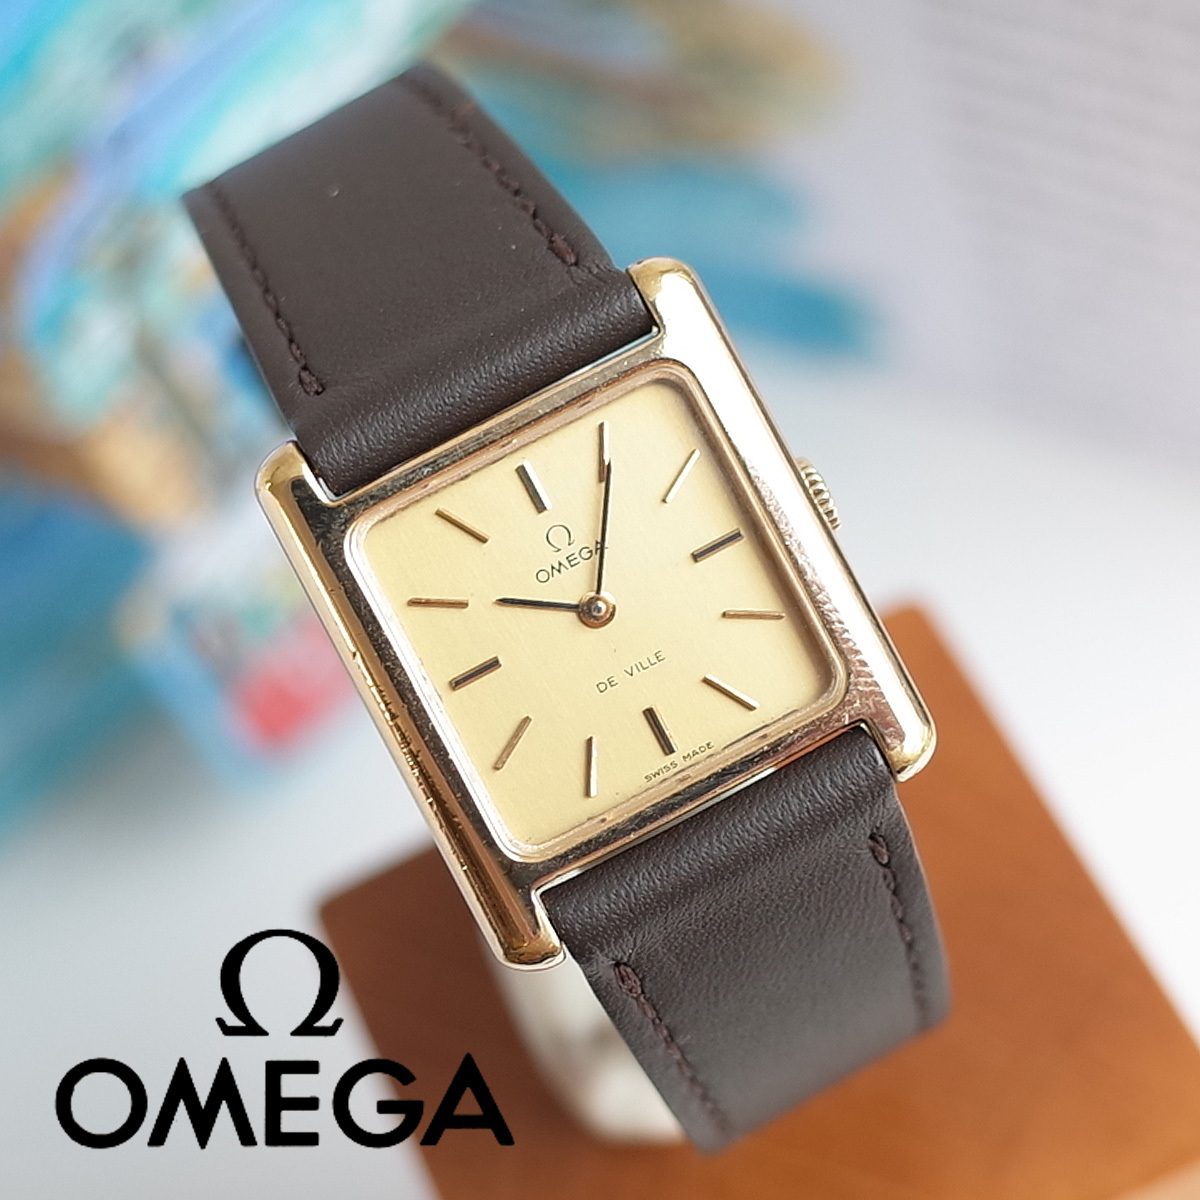 新しいエルメス 稼動品【omega】オメガ デビル 750(k18yg) スクエア レディース - 腕時計 - albinofoundation.org